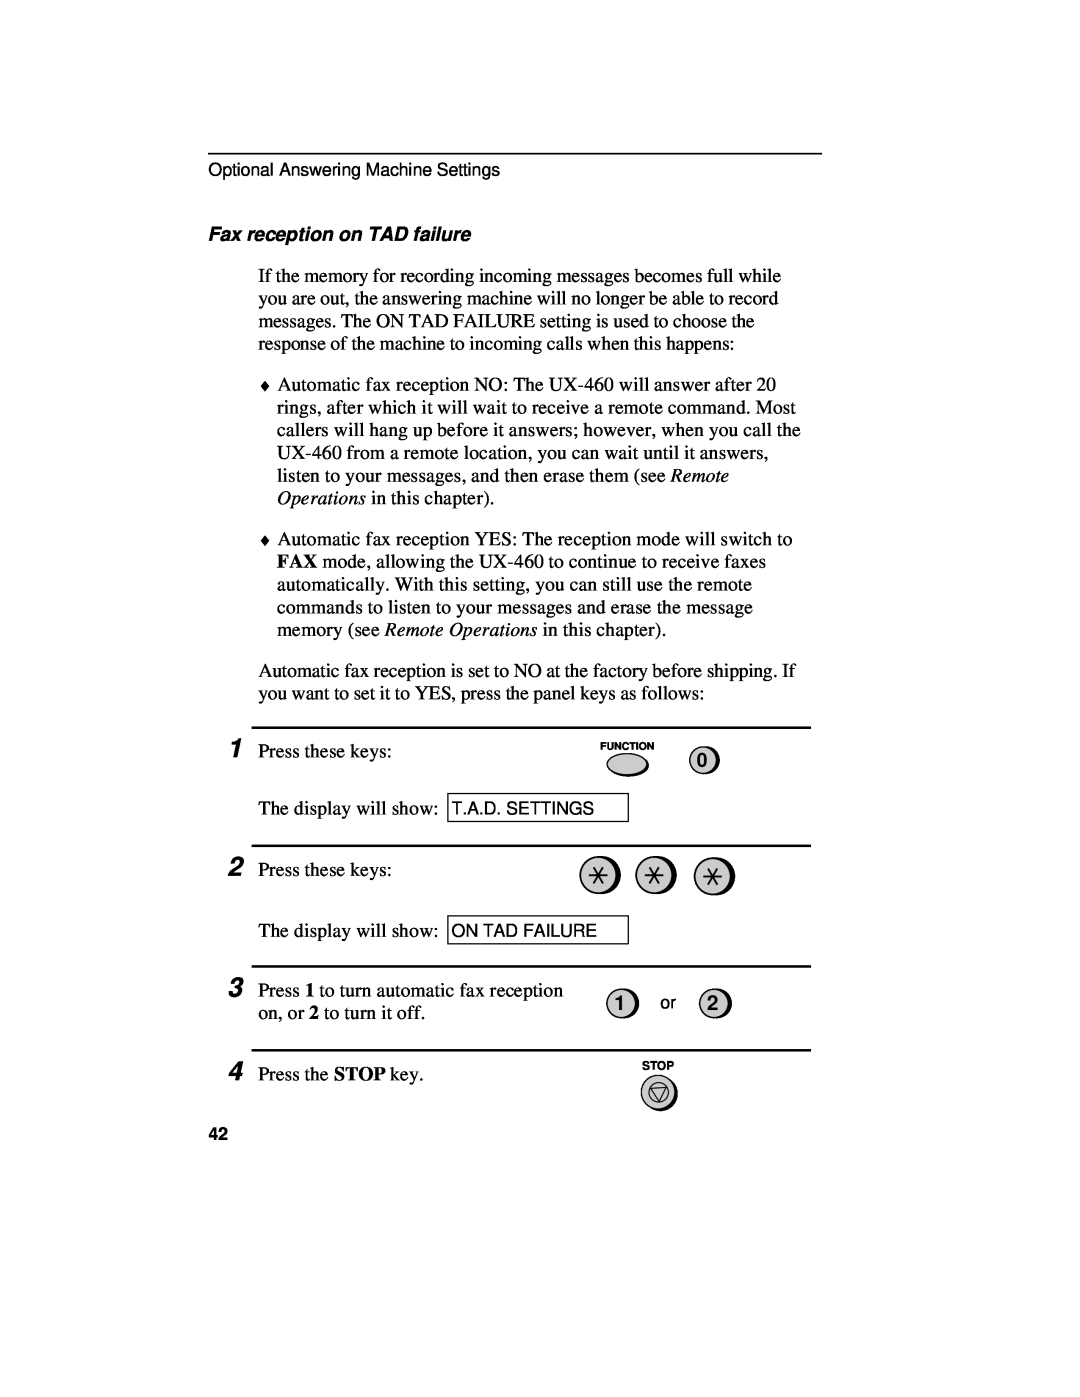 Sharp UX-460 operation manual Fax reception on TAD failure 